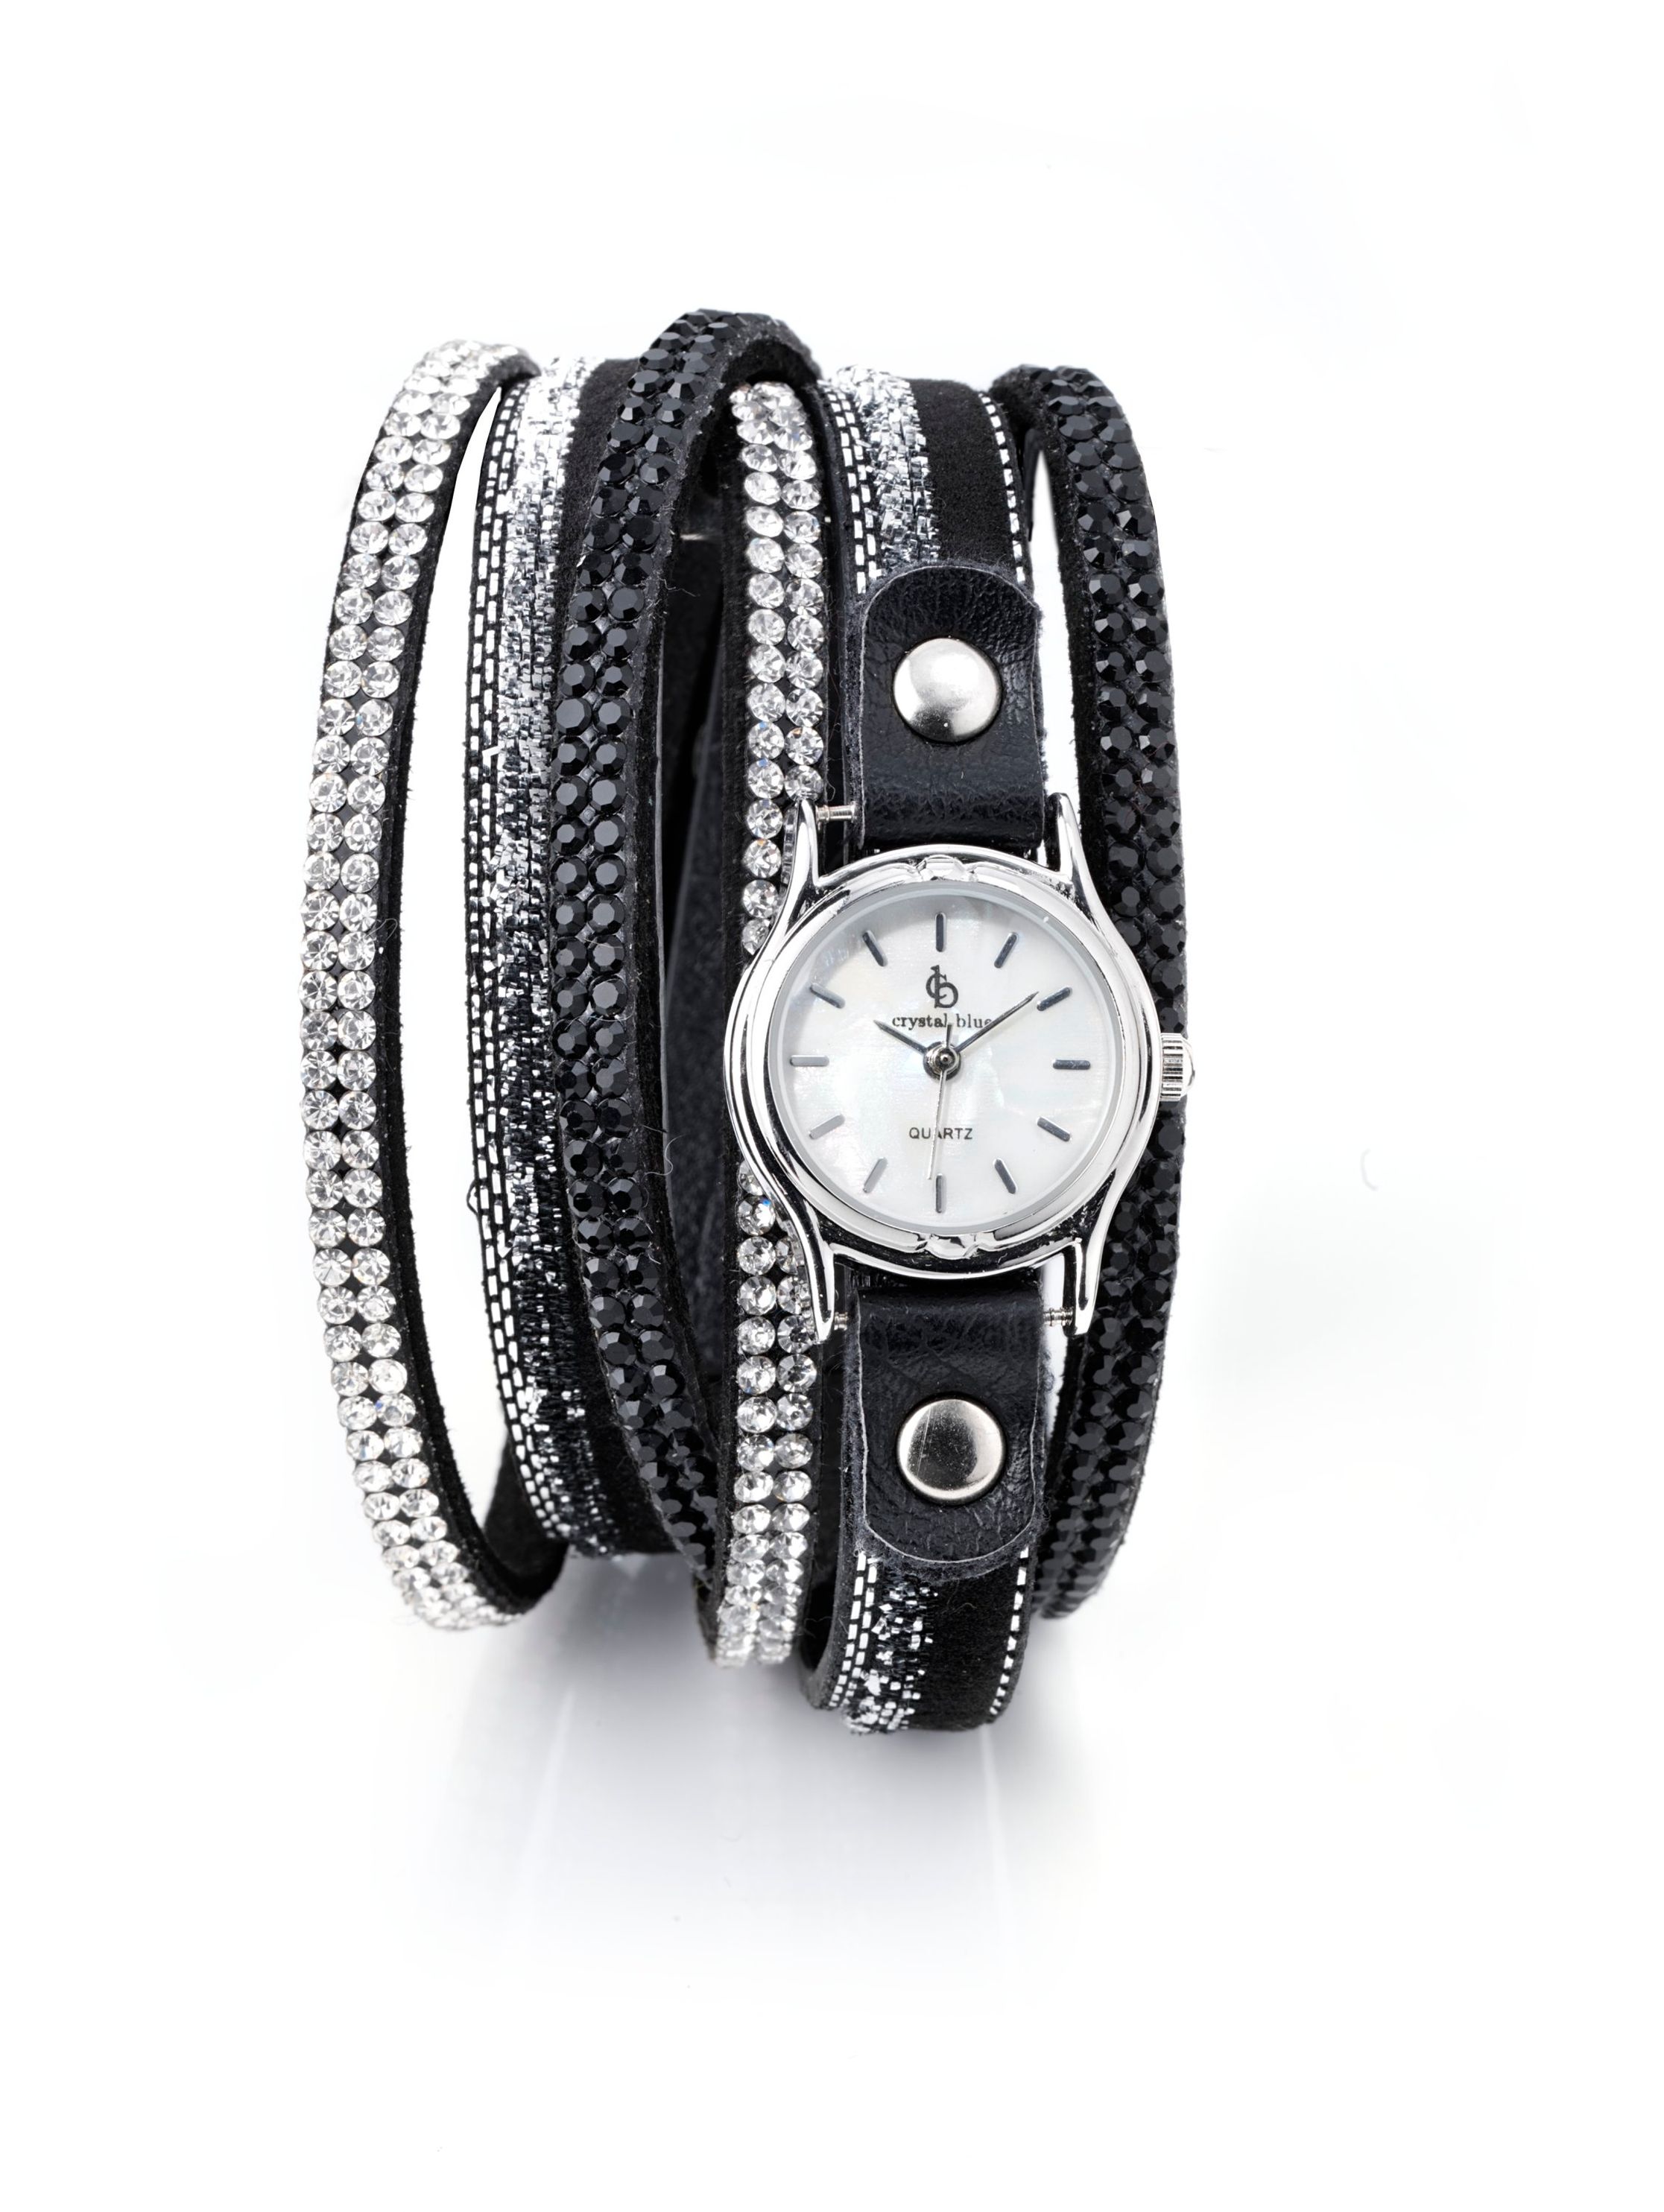 Damen Wickelarmband mit Uhr, schwarz silber | Weltbild.de